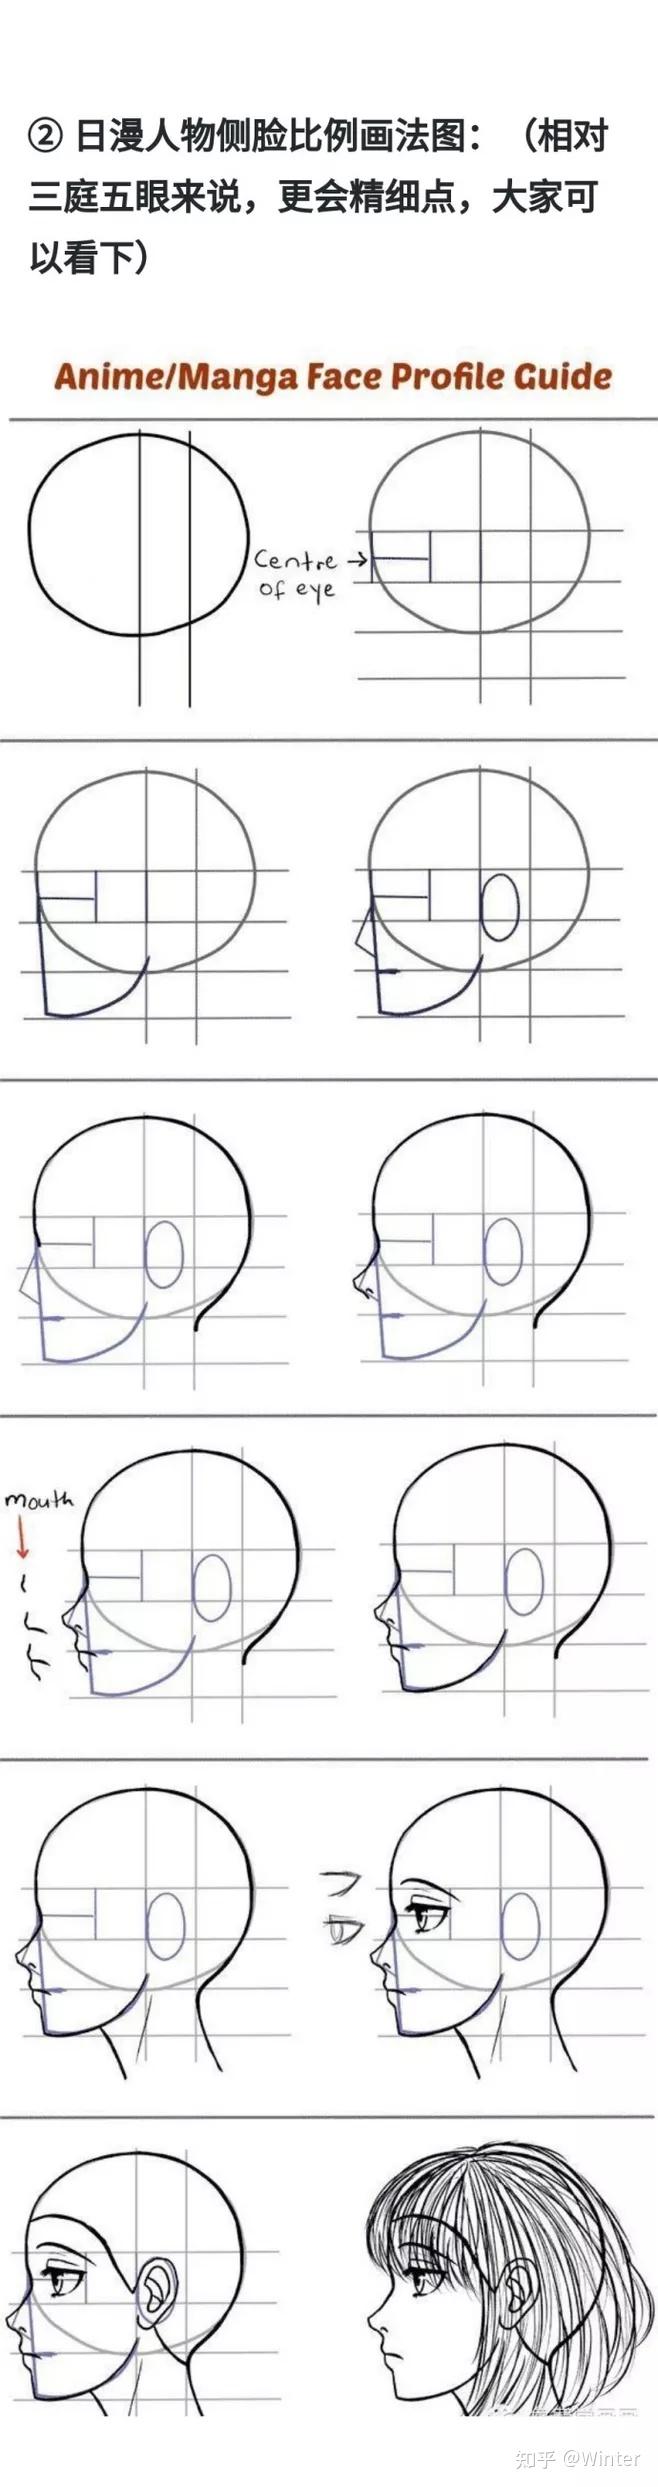 绘画练习素材丨上千个不同角度头部脸型眼睛结构比例表情等练习参考